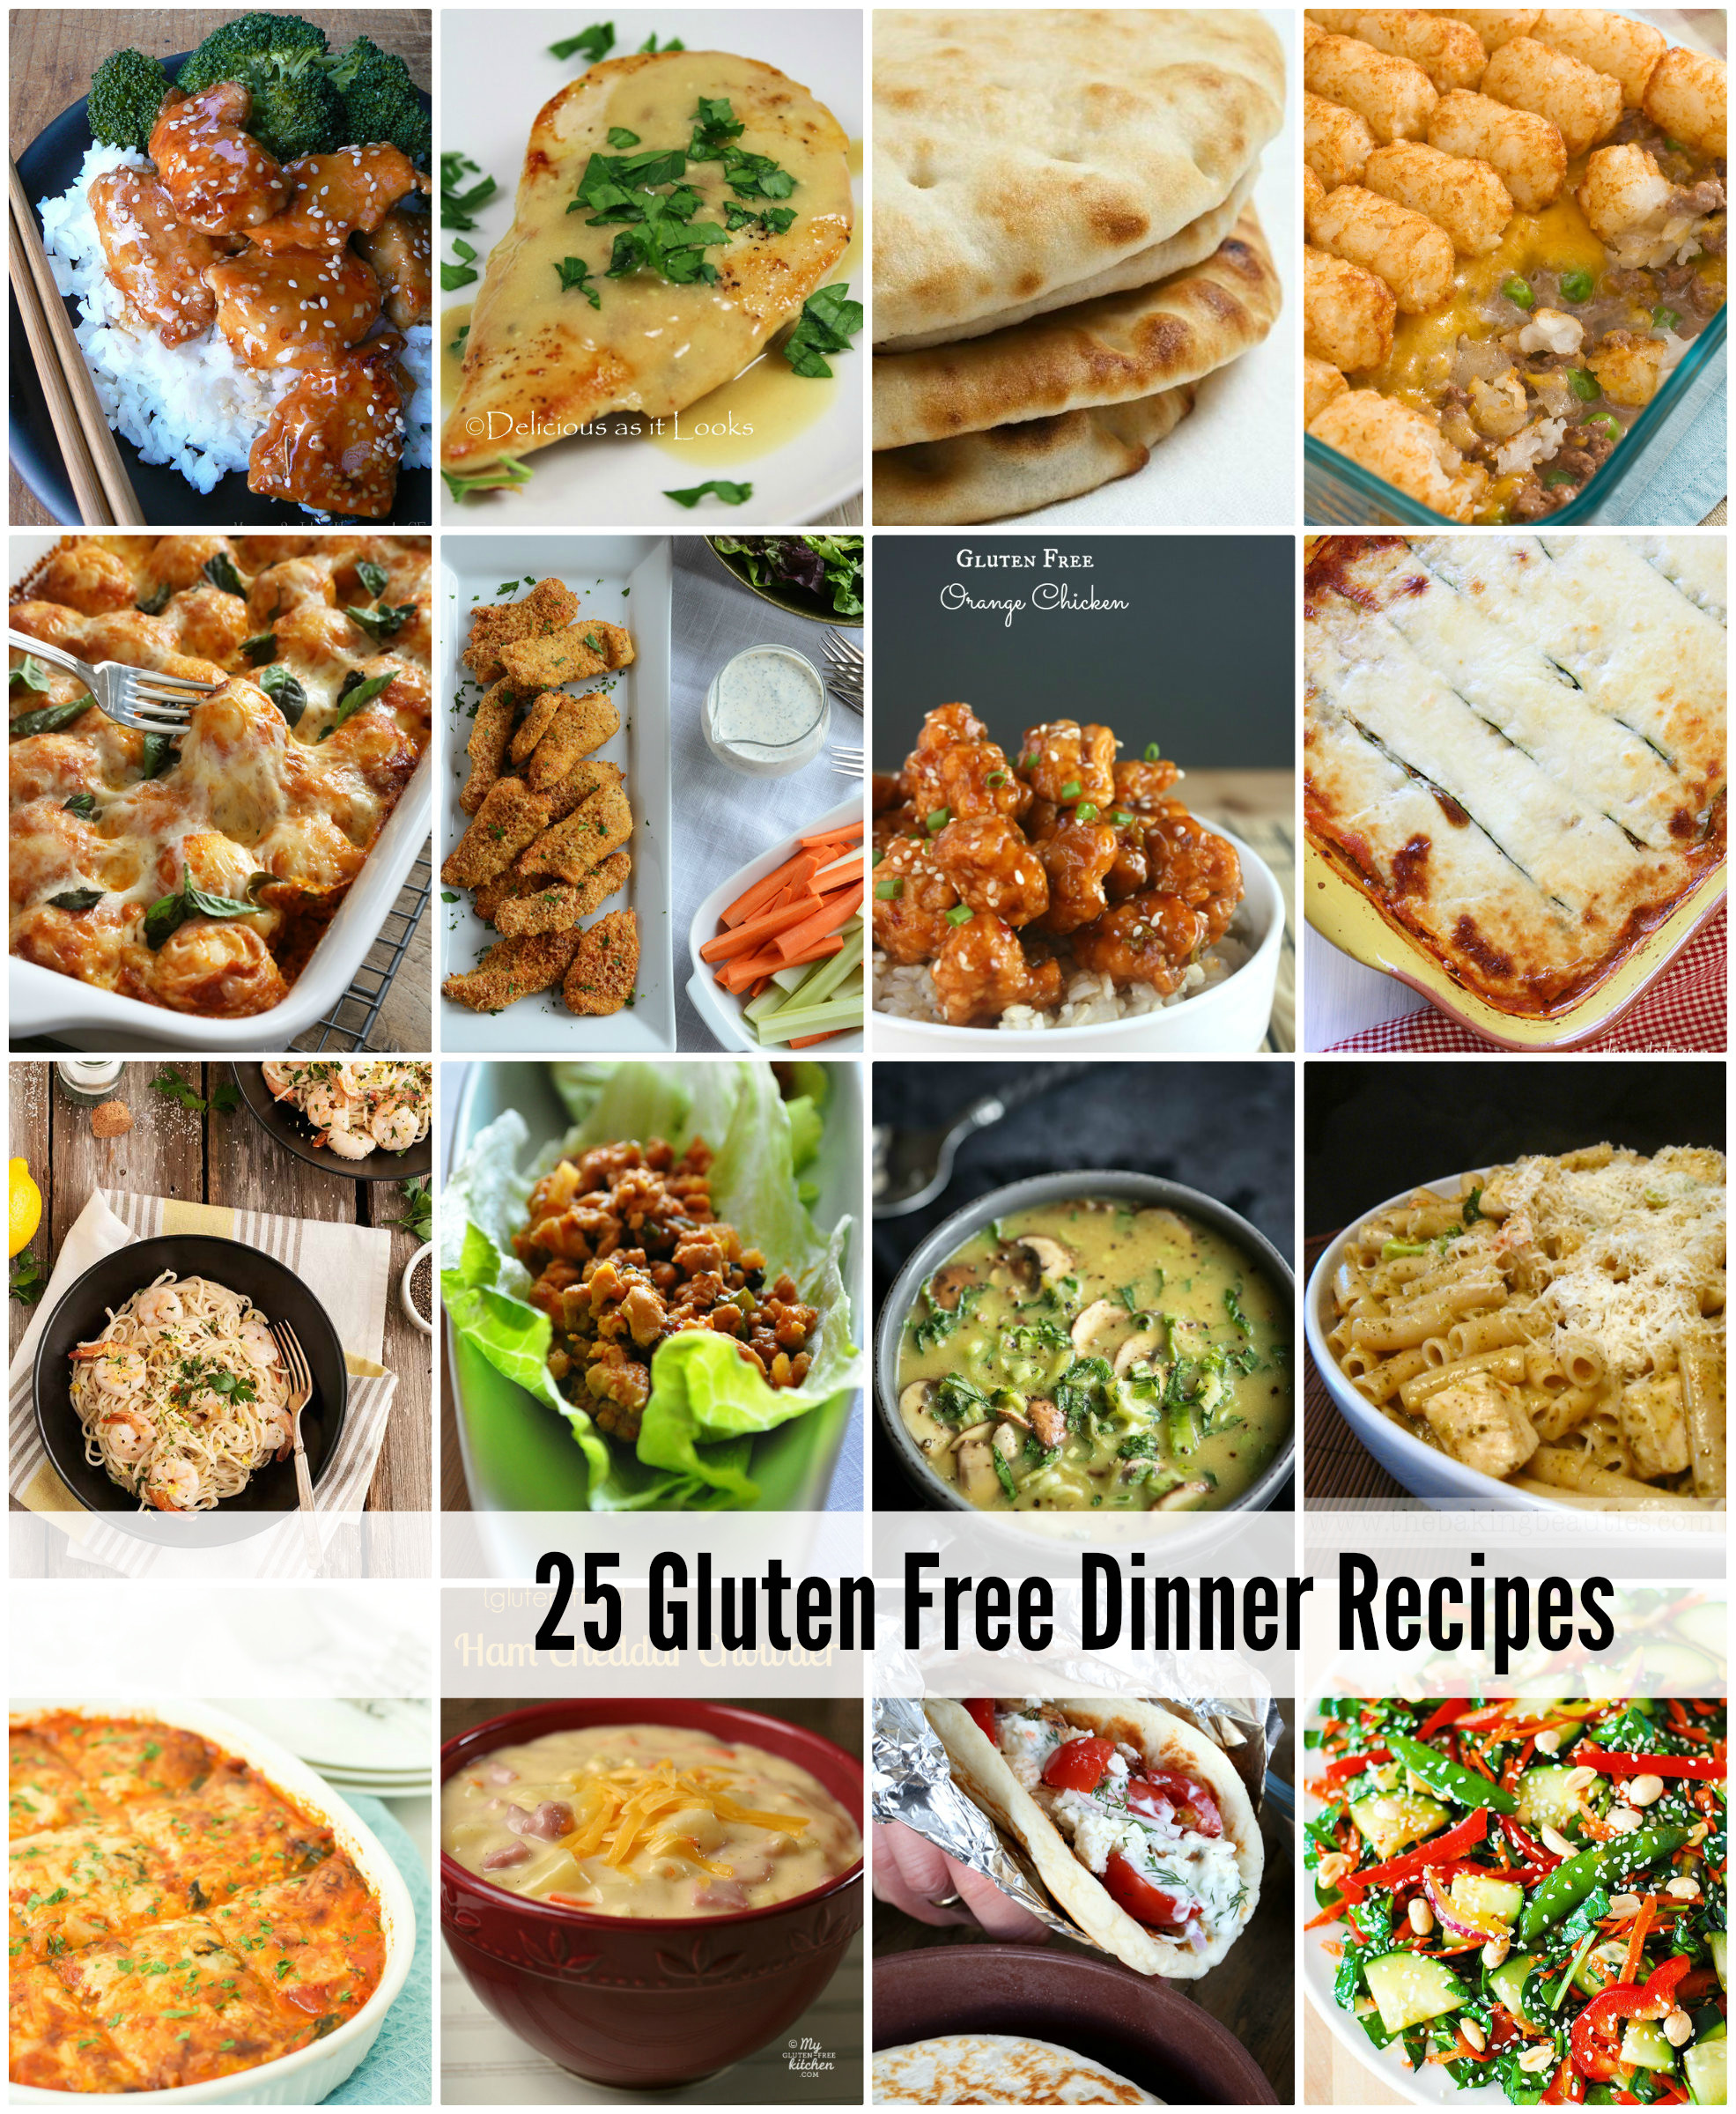 Easy Gf Dinner Recipes
 easy gluten free dinner recipes for family